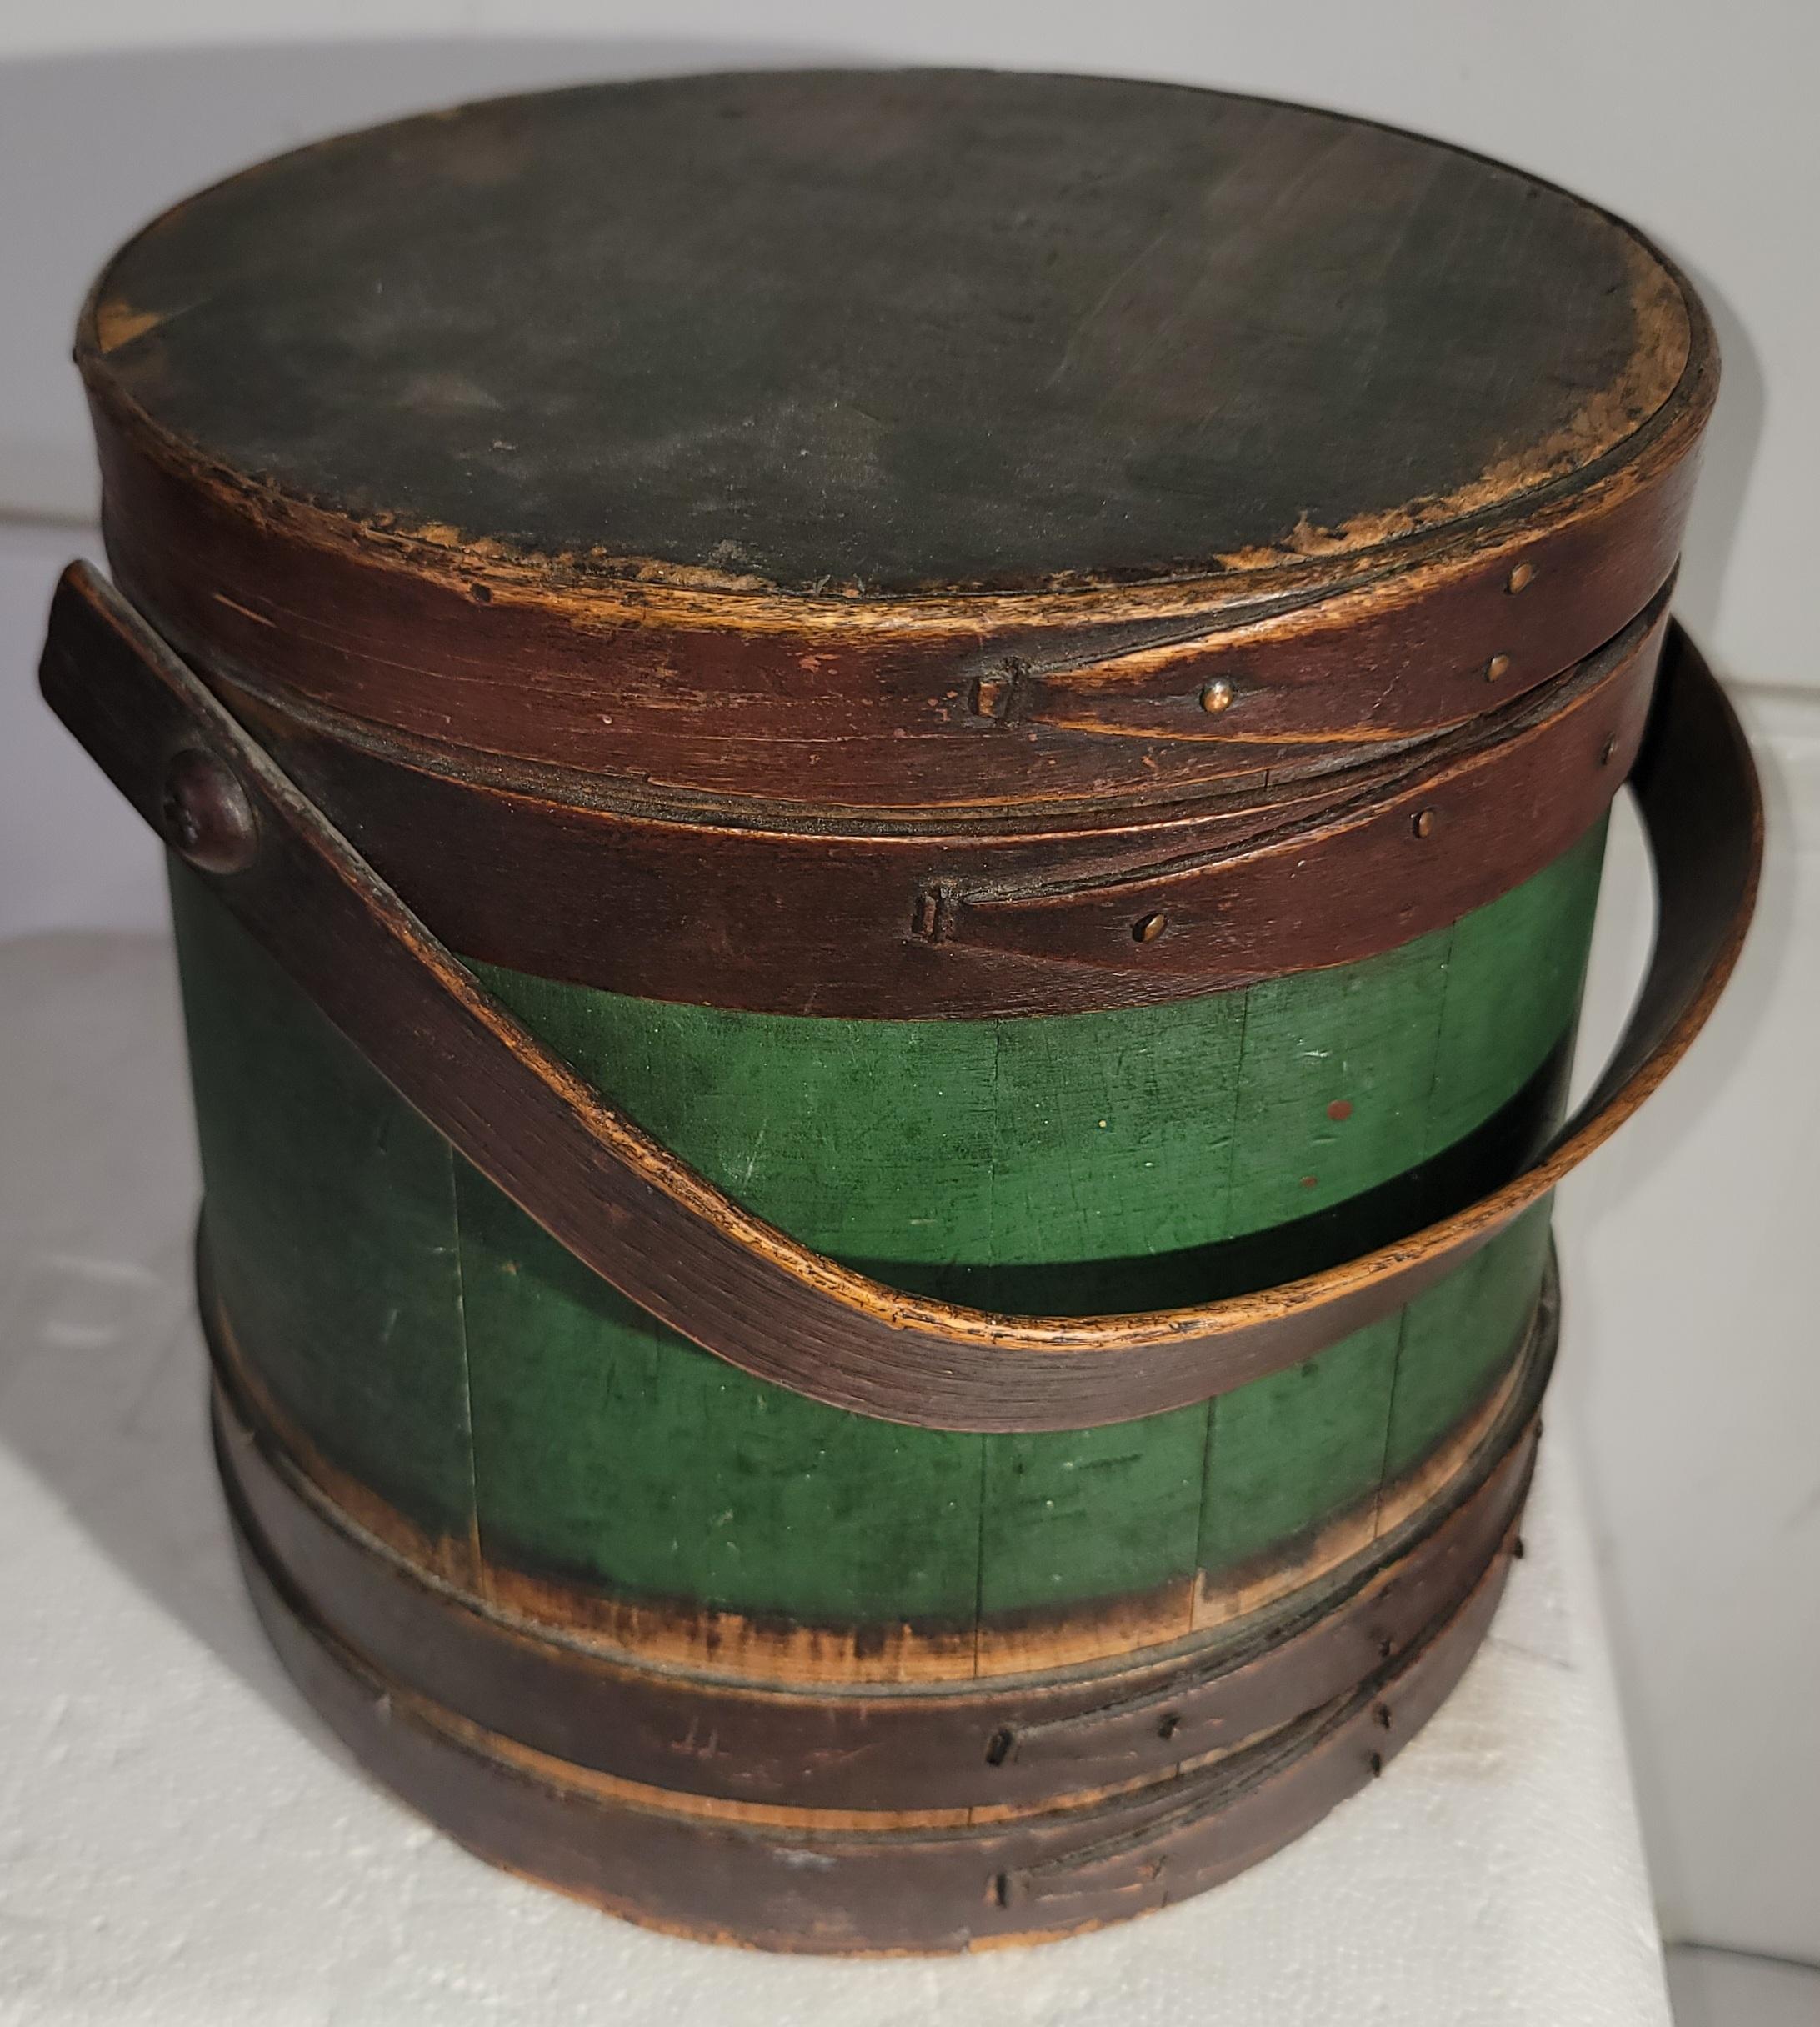 Seau à fourrure original du 19ème siècle, peint en vert et en brun, provenant de la Nouvelle-Angleterre.